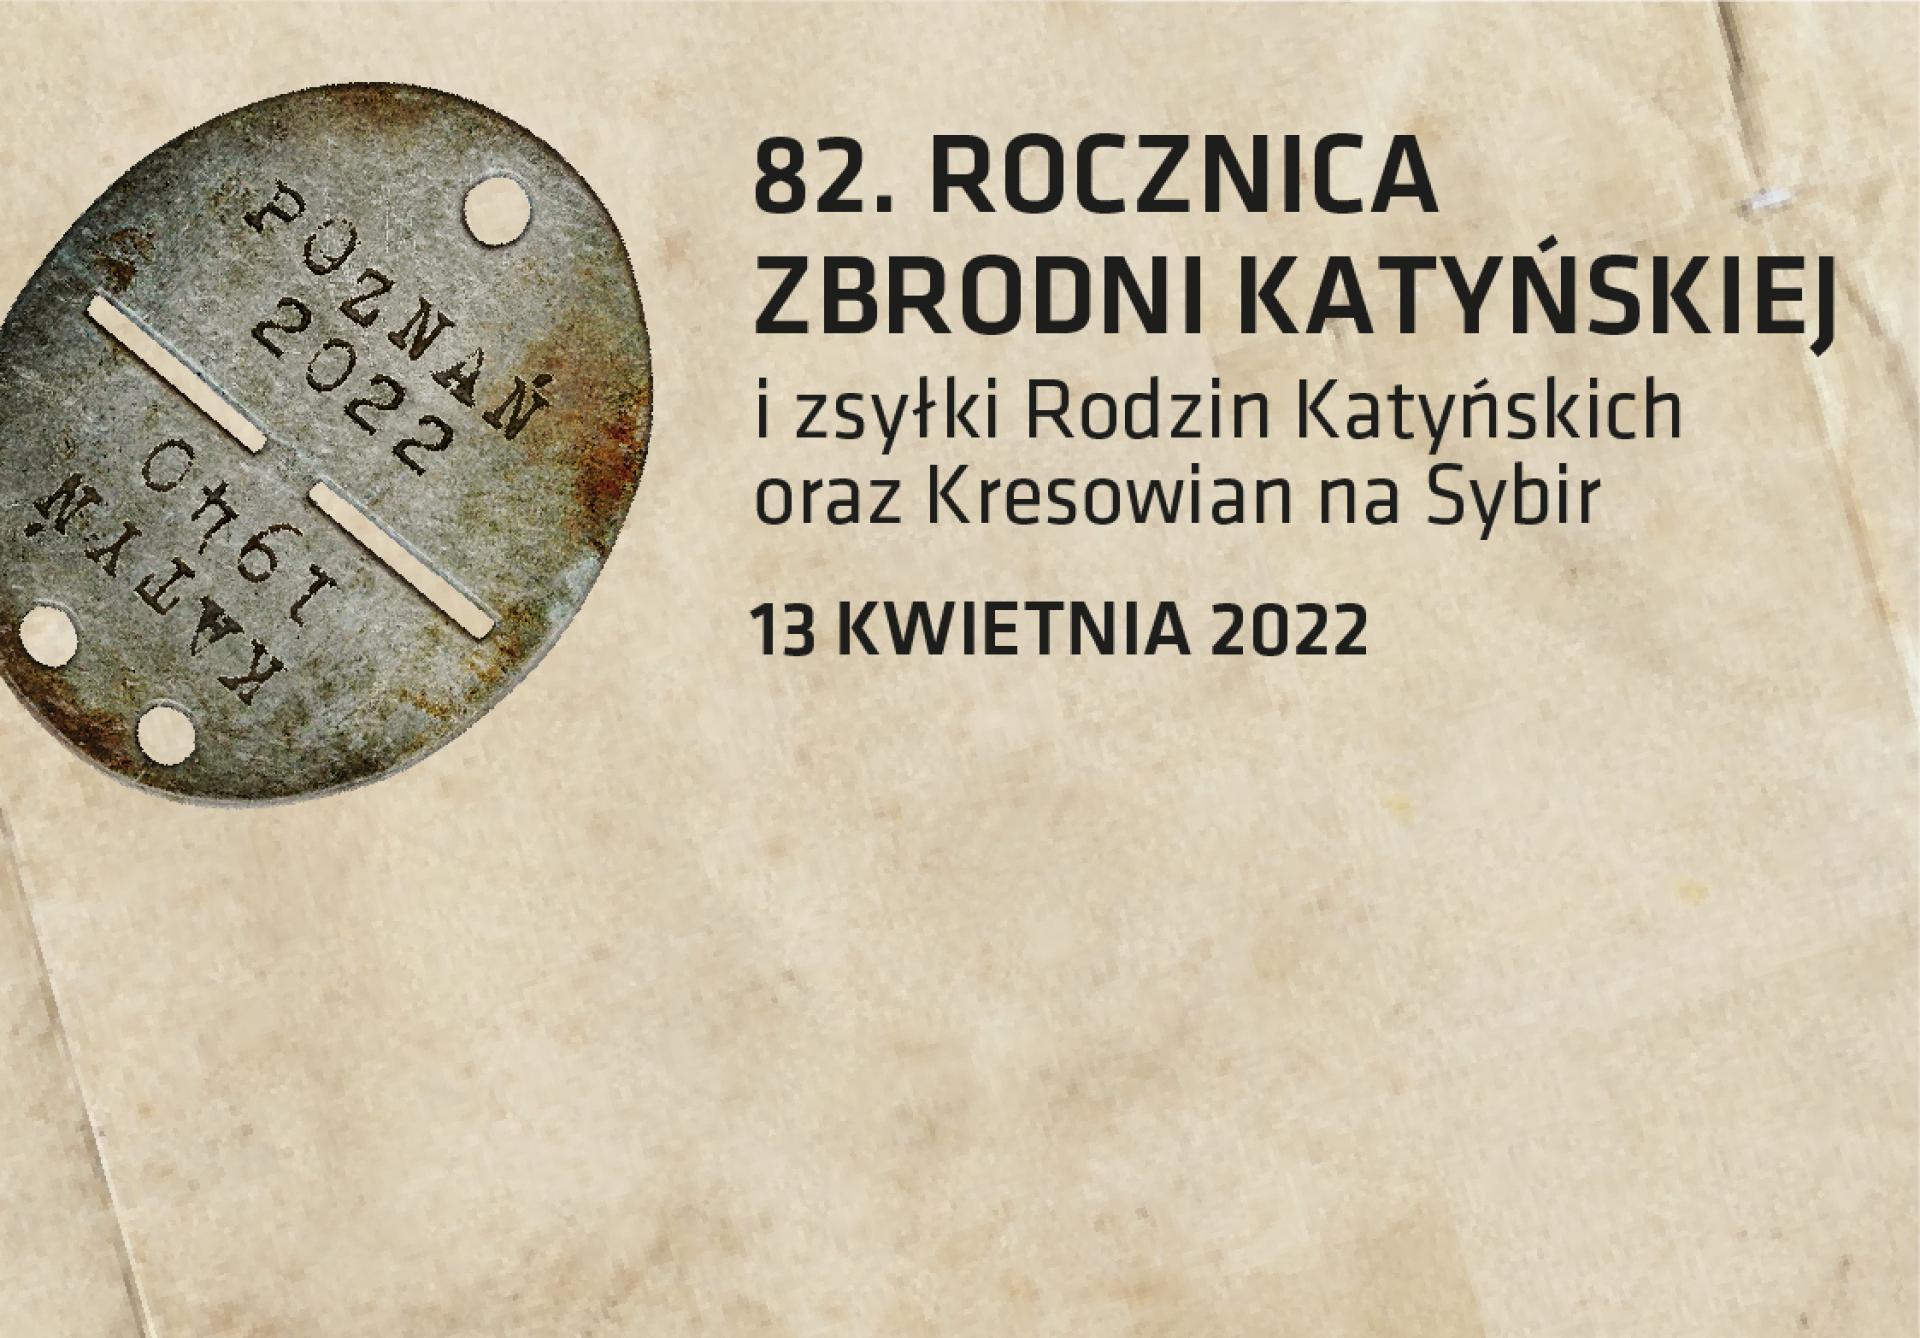 Uczcijcie z nami pamięć ofiar Katynia i Sybiru!  - zobacz więcej